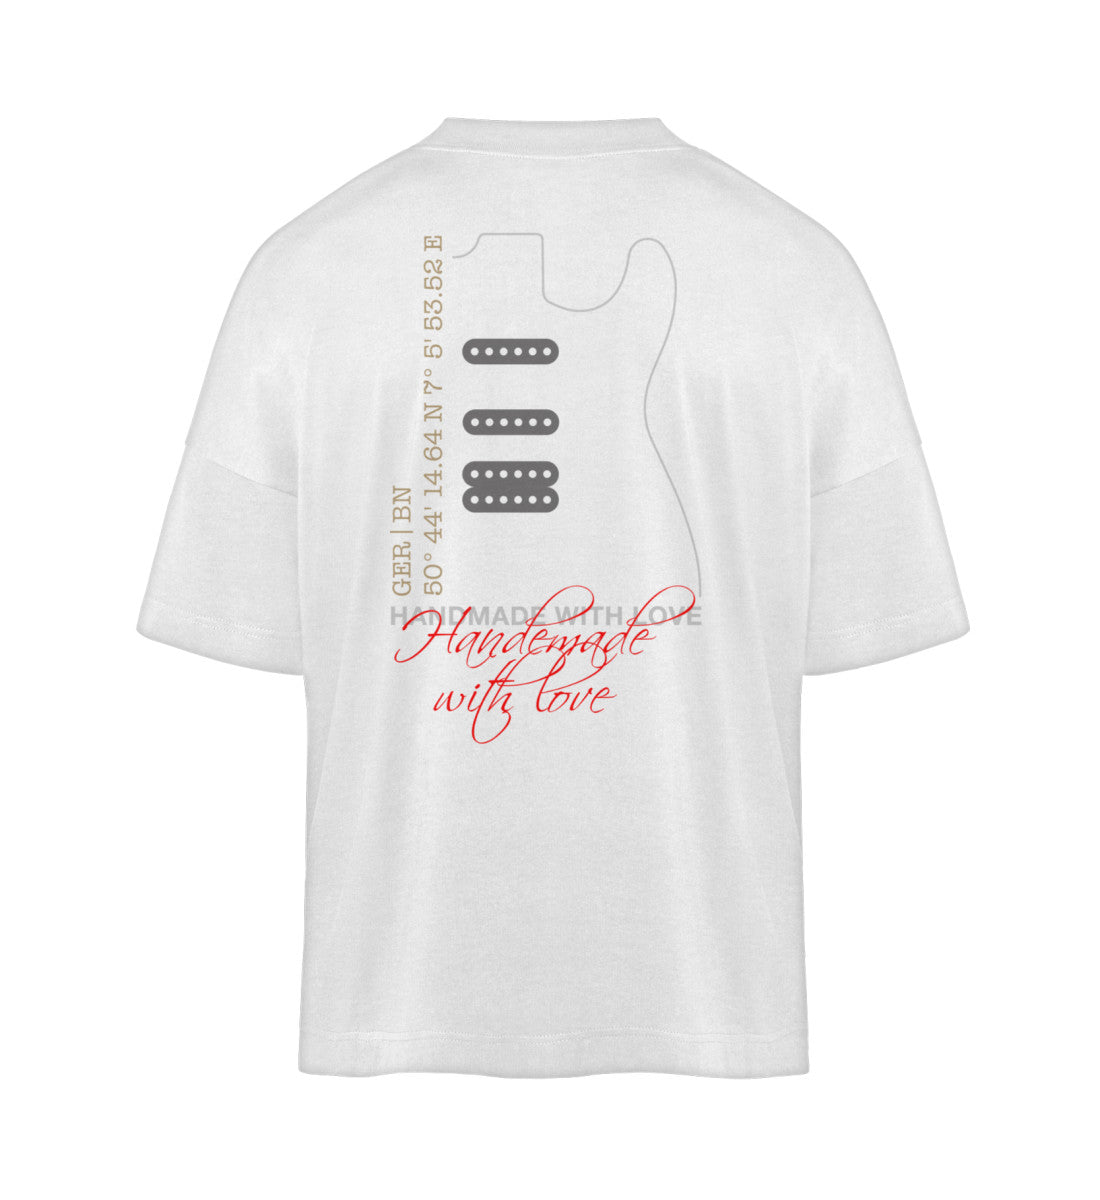 Weißes T-Shirt Unisex Oversize Fit für Frauen und Männer bedruckt mit dem Design der Roger Rockawoo Kollektion Smooth Custom Guitars